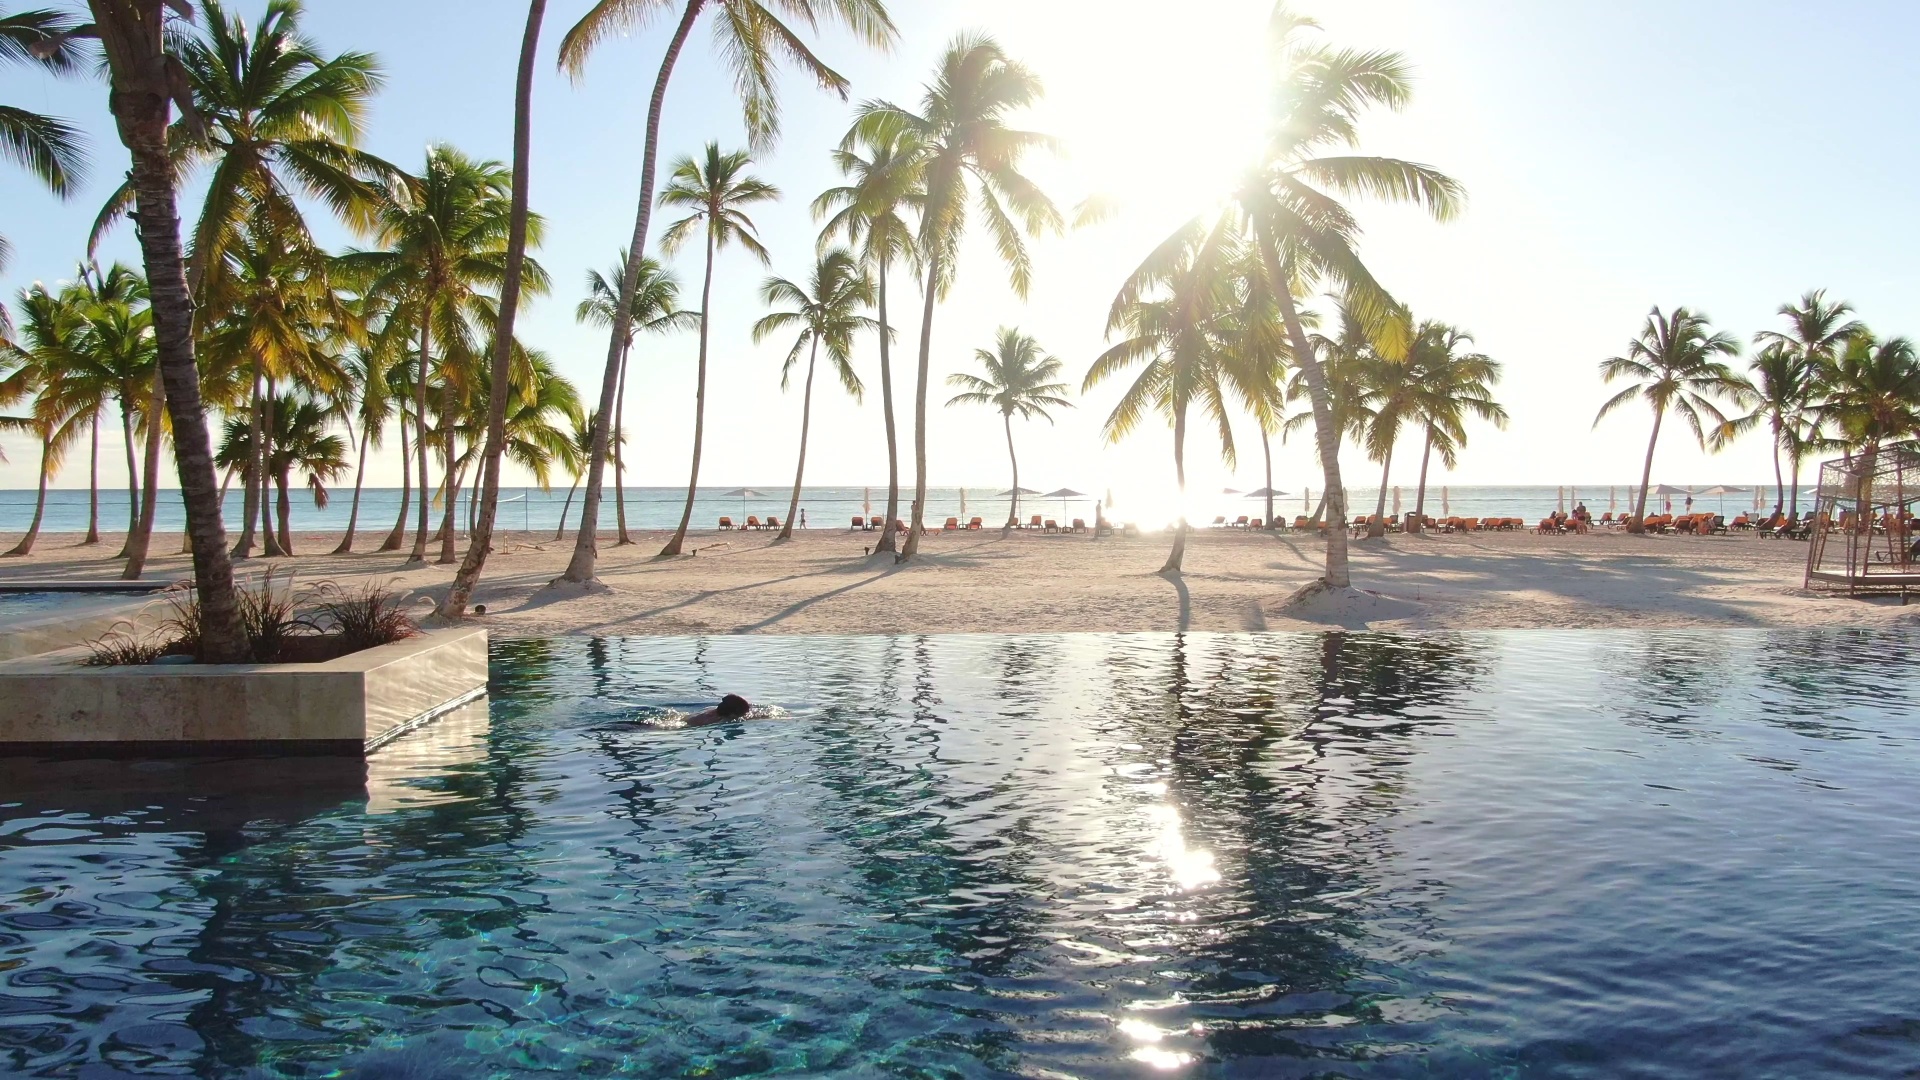 Infinity pool de un hotel frente al mar en Punta Cana